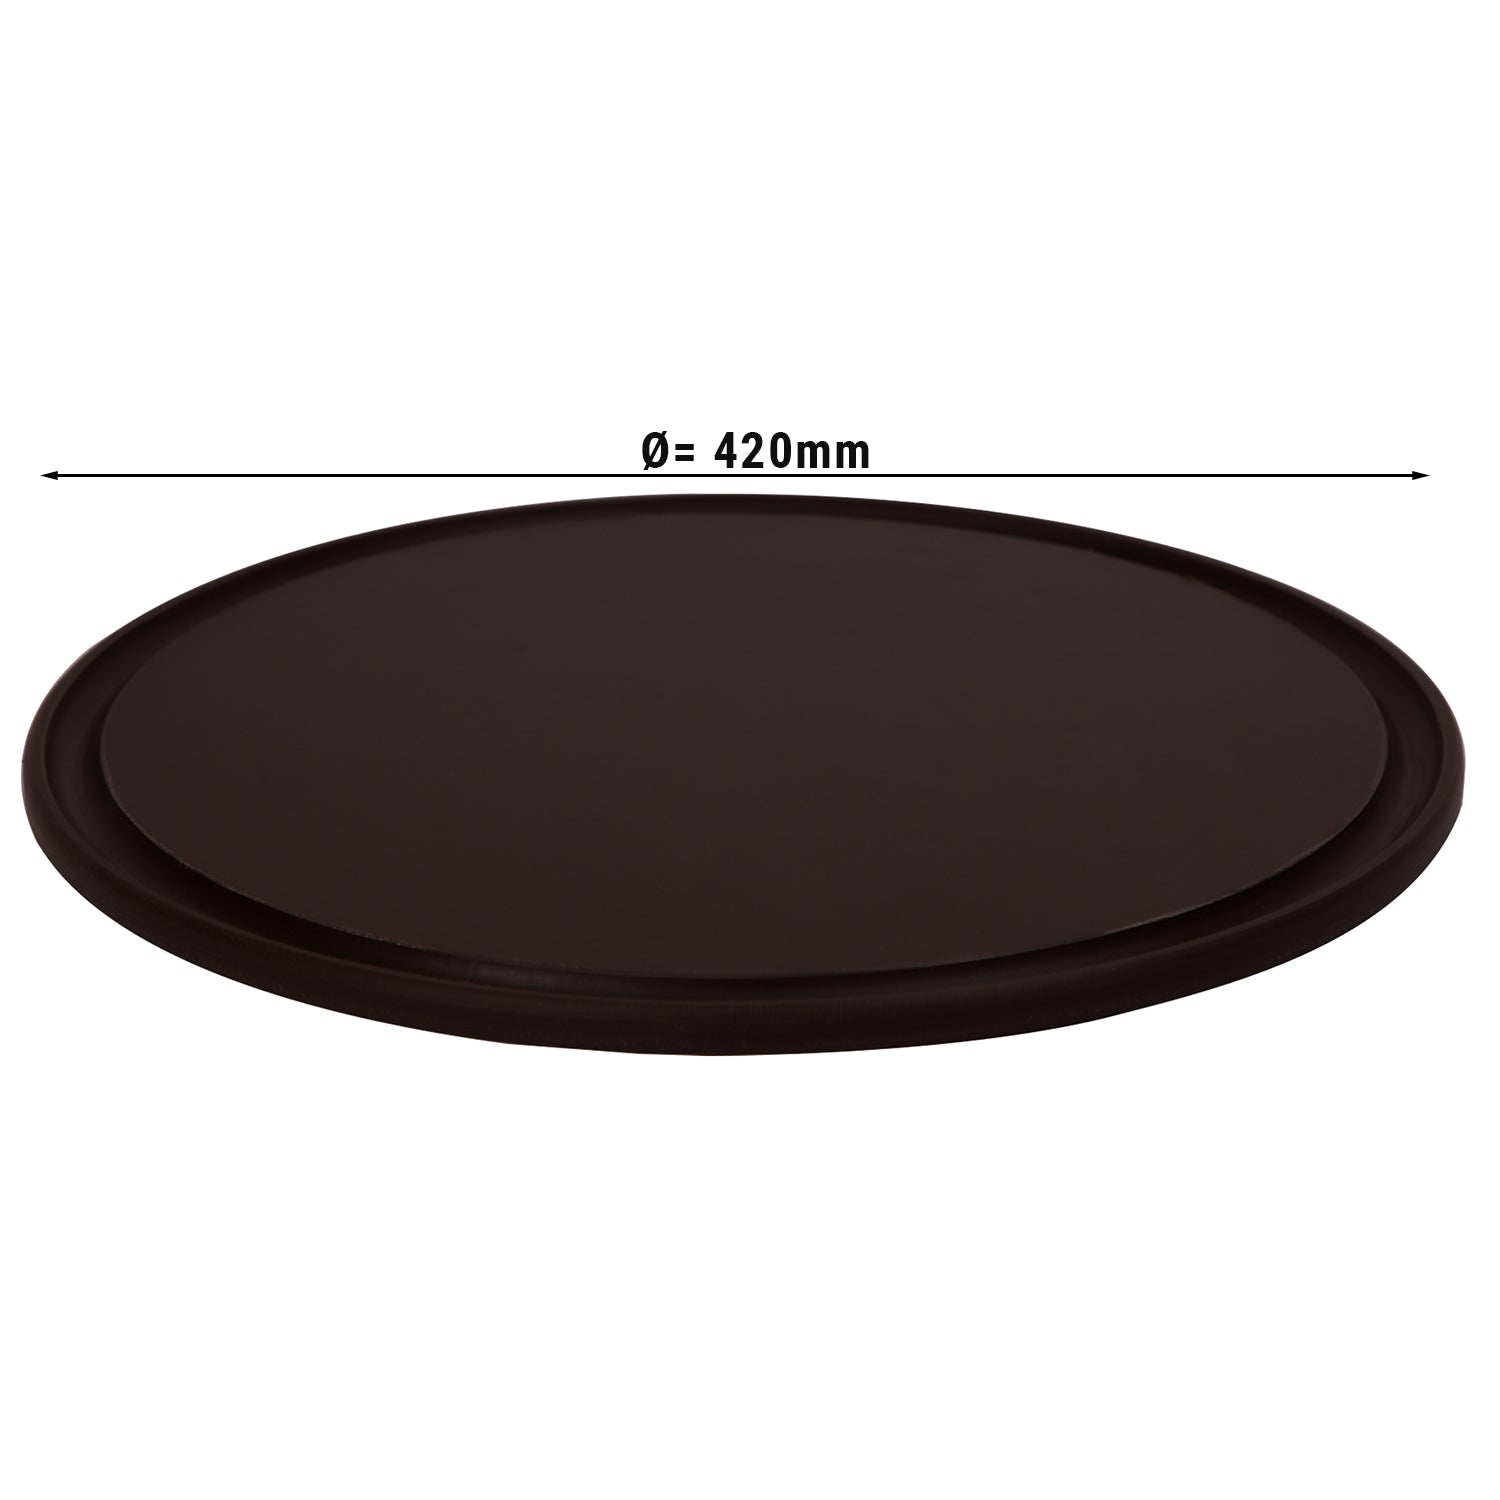 Pizzabakke - 42 cm i diameter